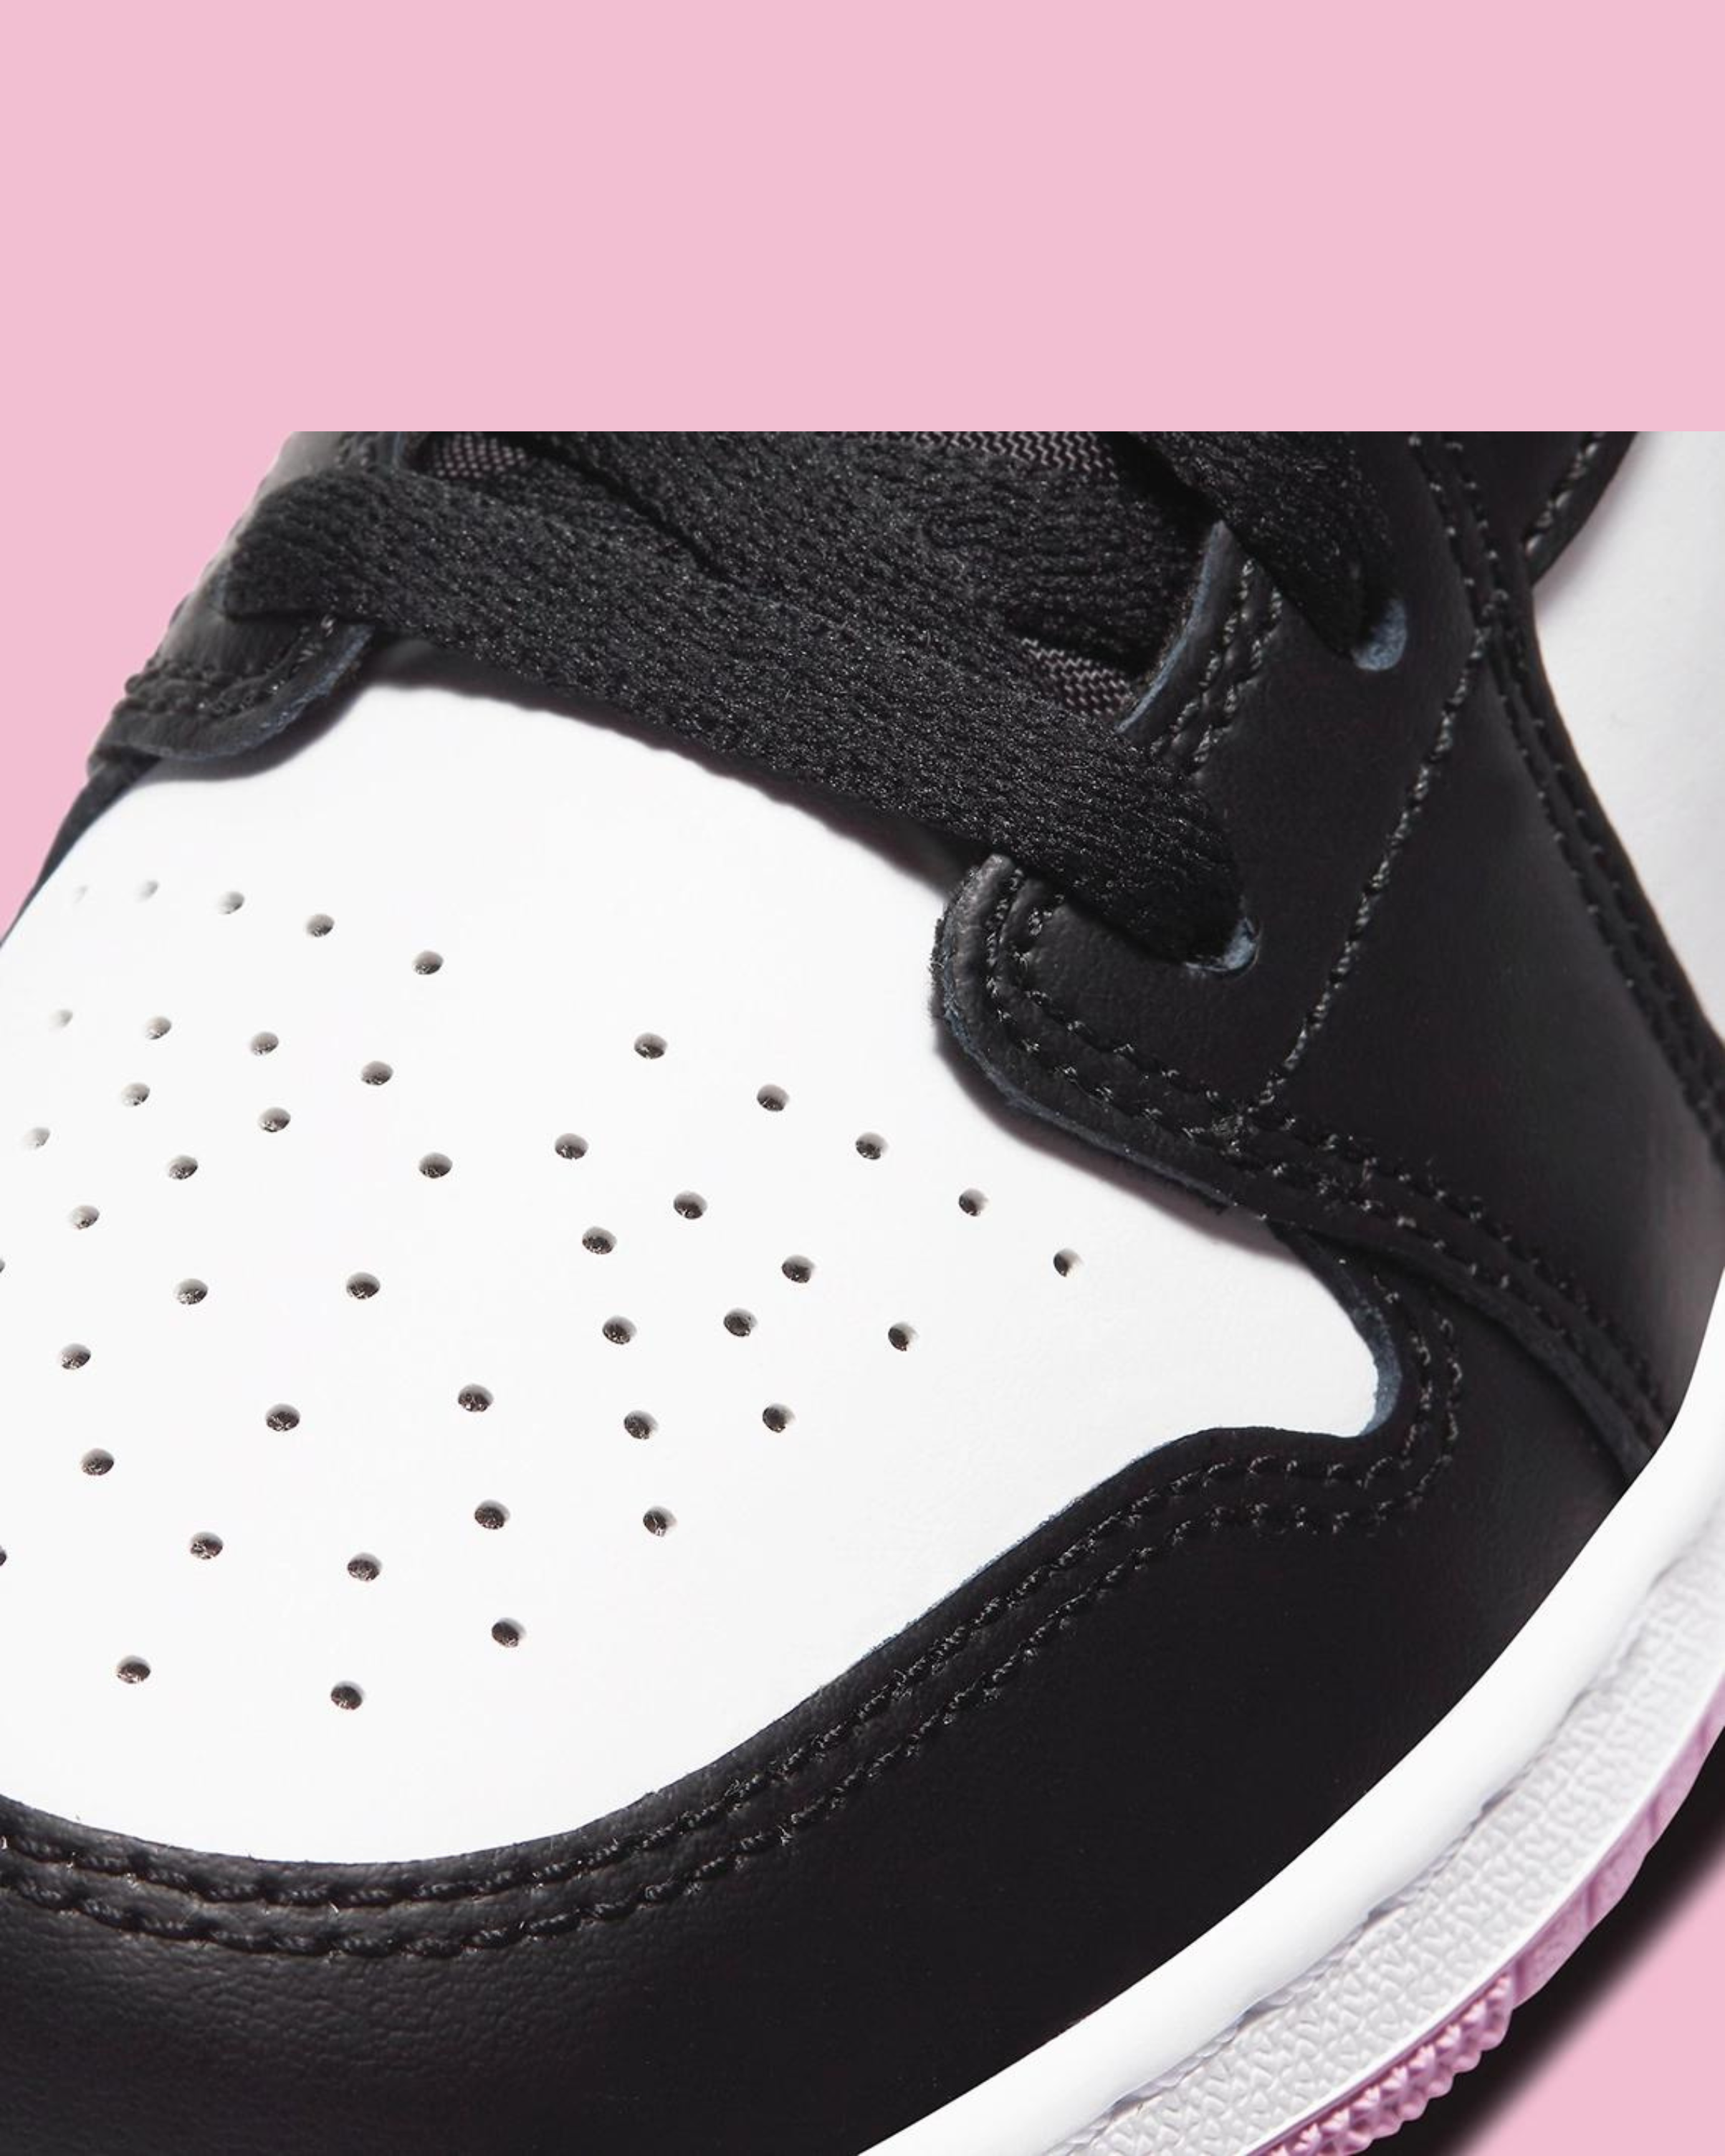 Air Jordan 1 Mid '' black and pink ''